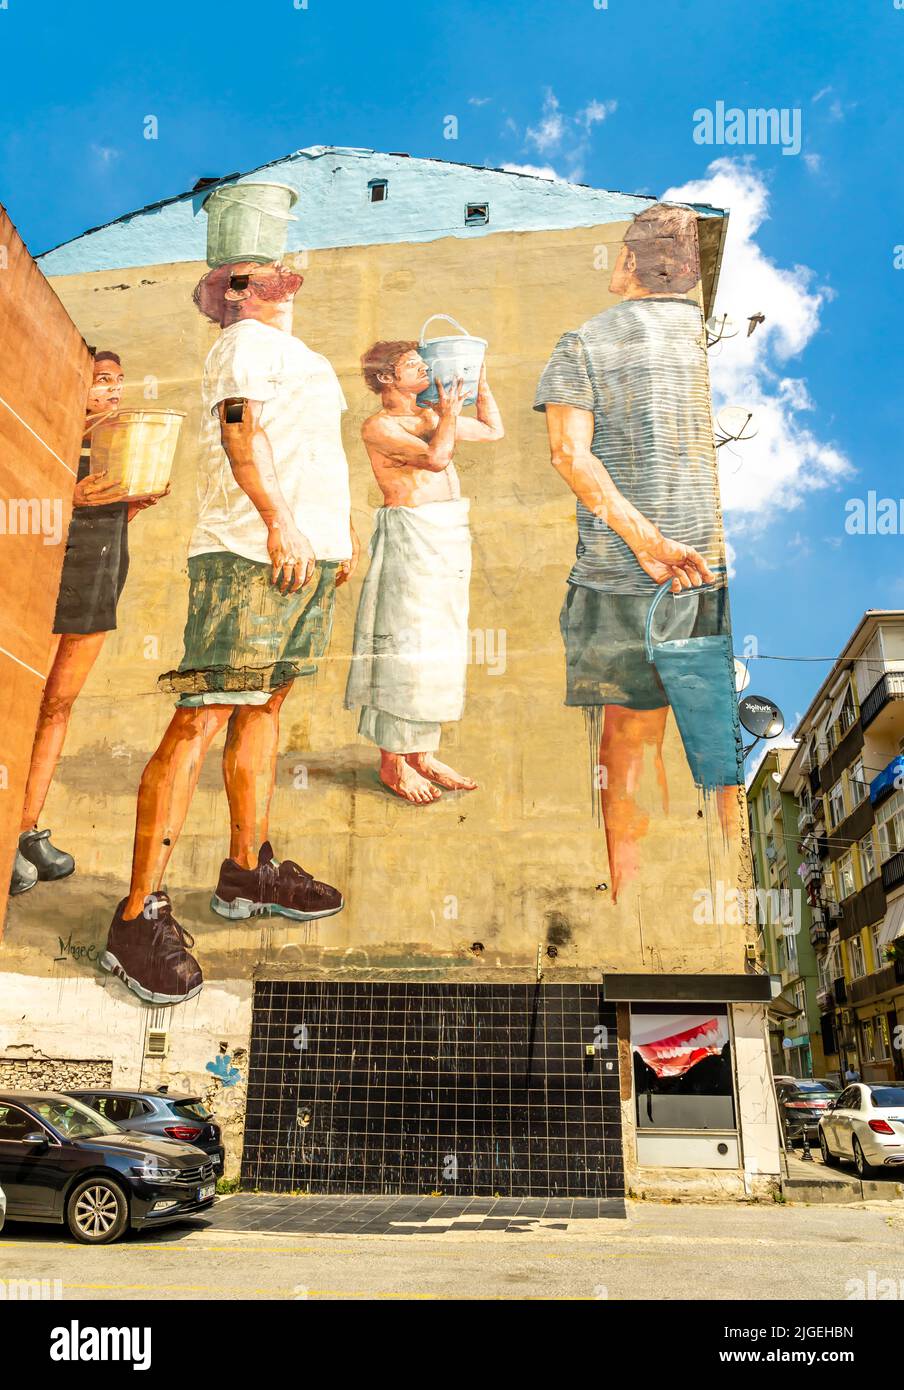 Fintan McGee arbeitet. Wandgemälde in Istanbul. Street Art, Wandgemälde des australischen Künstlers Fintan McGee Pray for Rain, 2017 in Kadiköy in Istanbul, Türkei Stockfoto